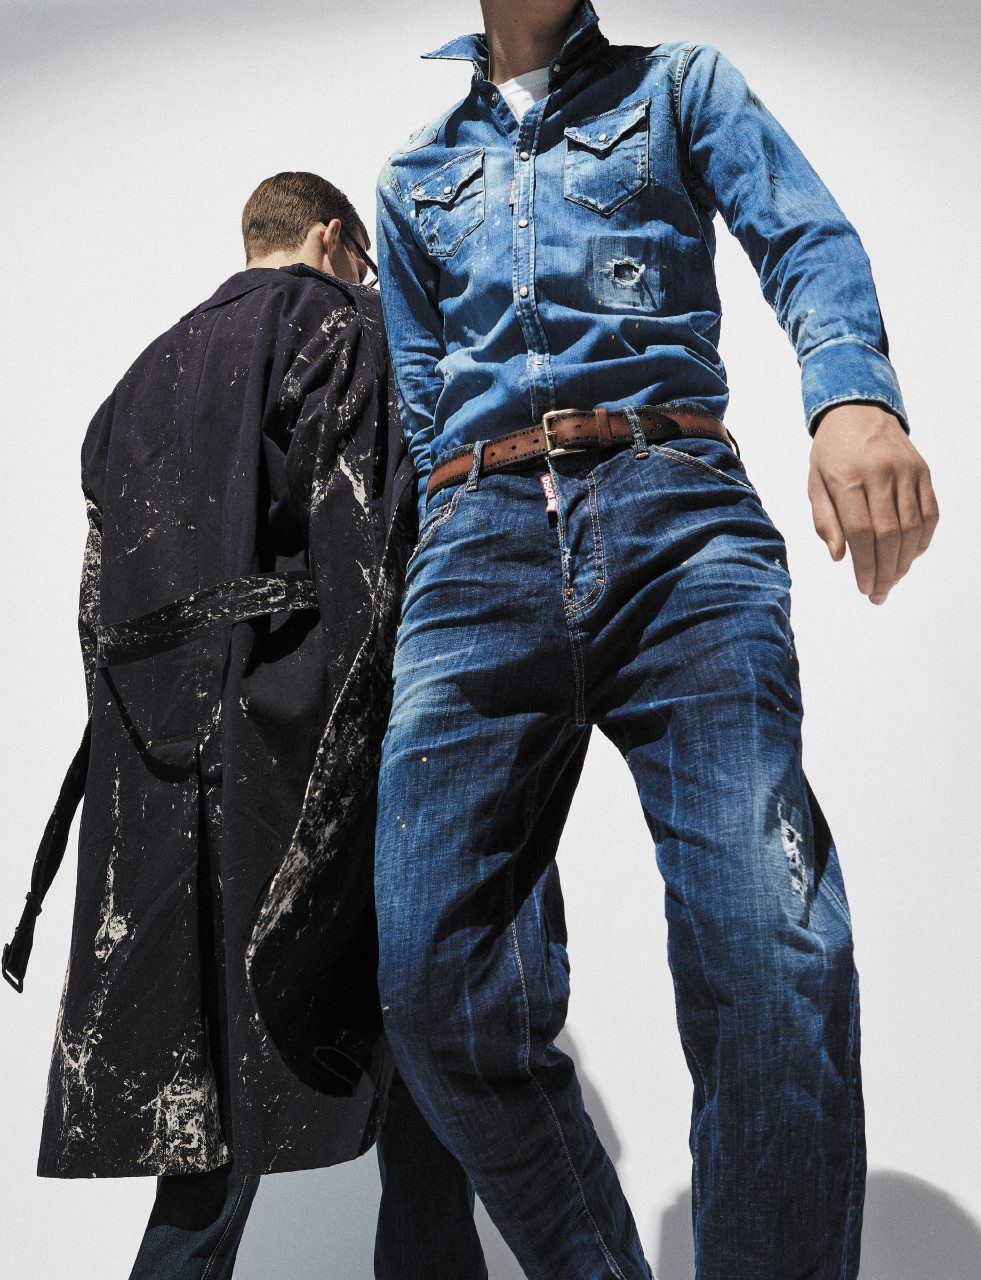 Jeans uomo primavera 2020: i nuovi modelli da avere subito - immagine 17